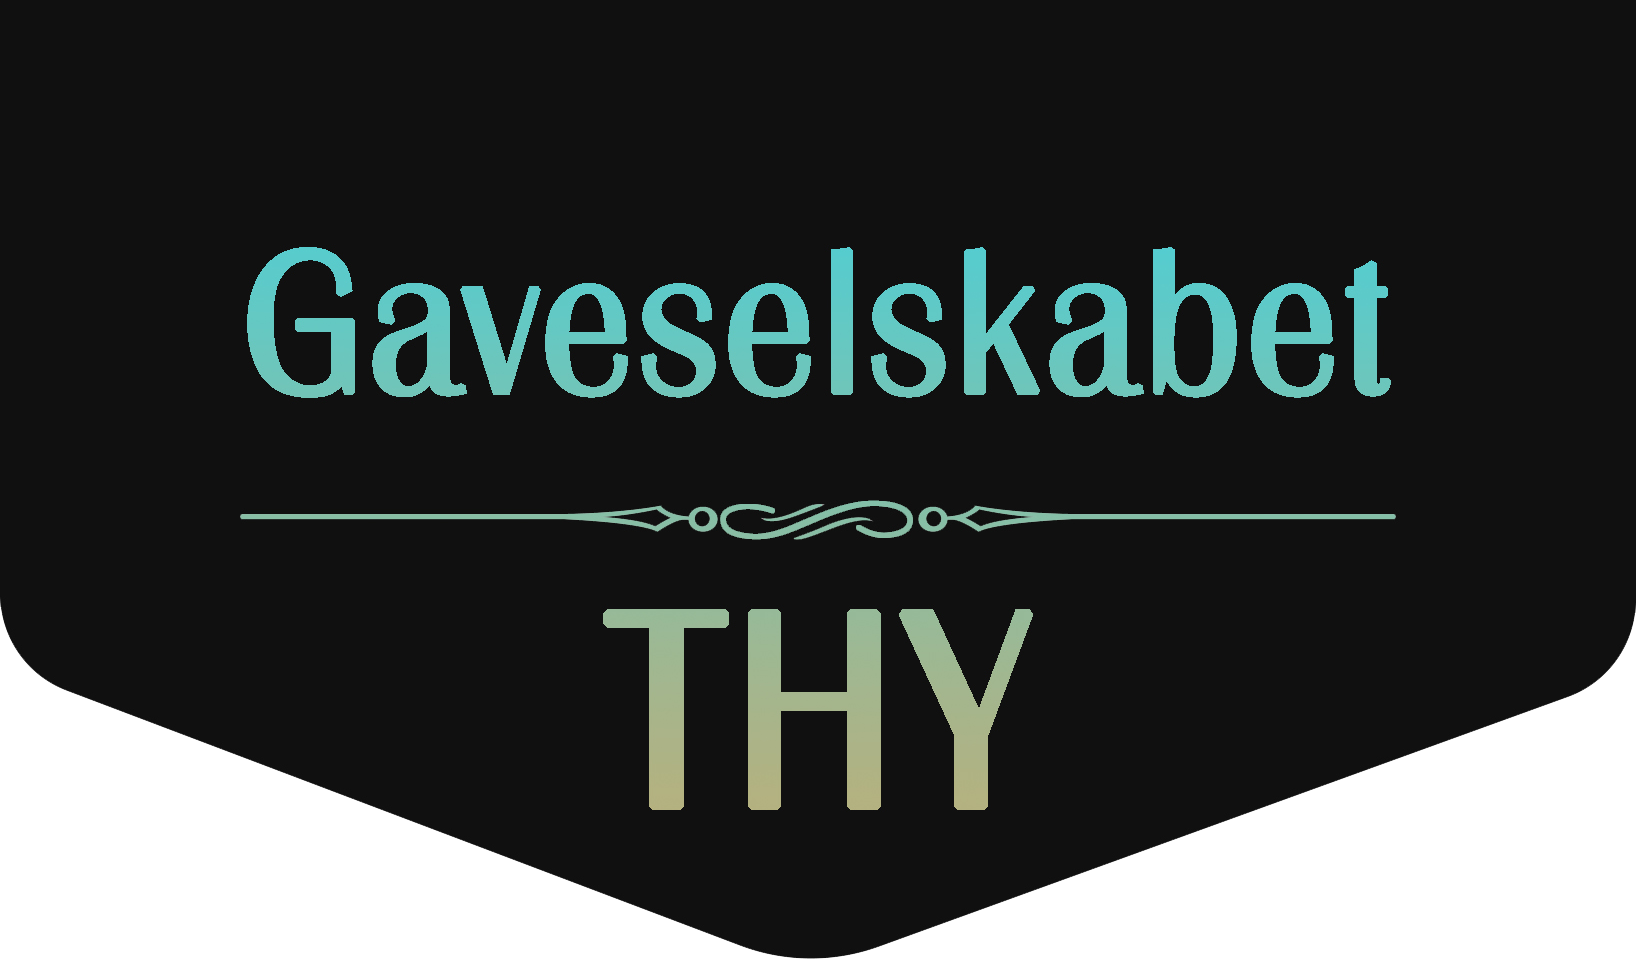 Gaveselskabet THY<br />by Svanenet I/S